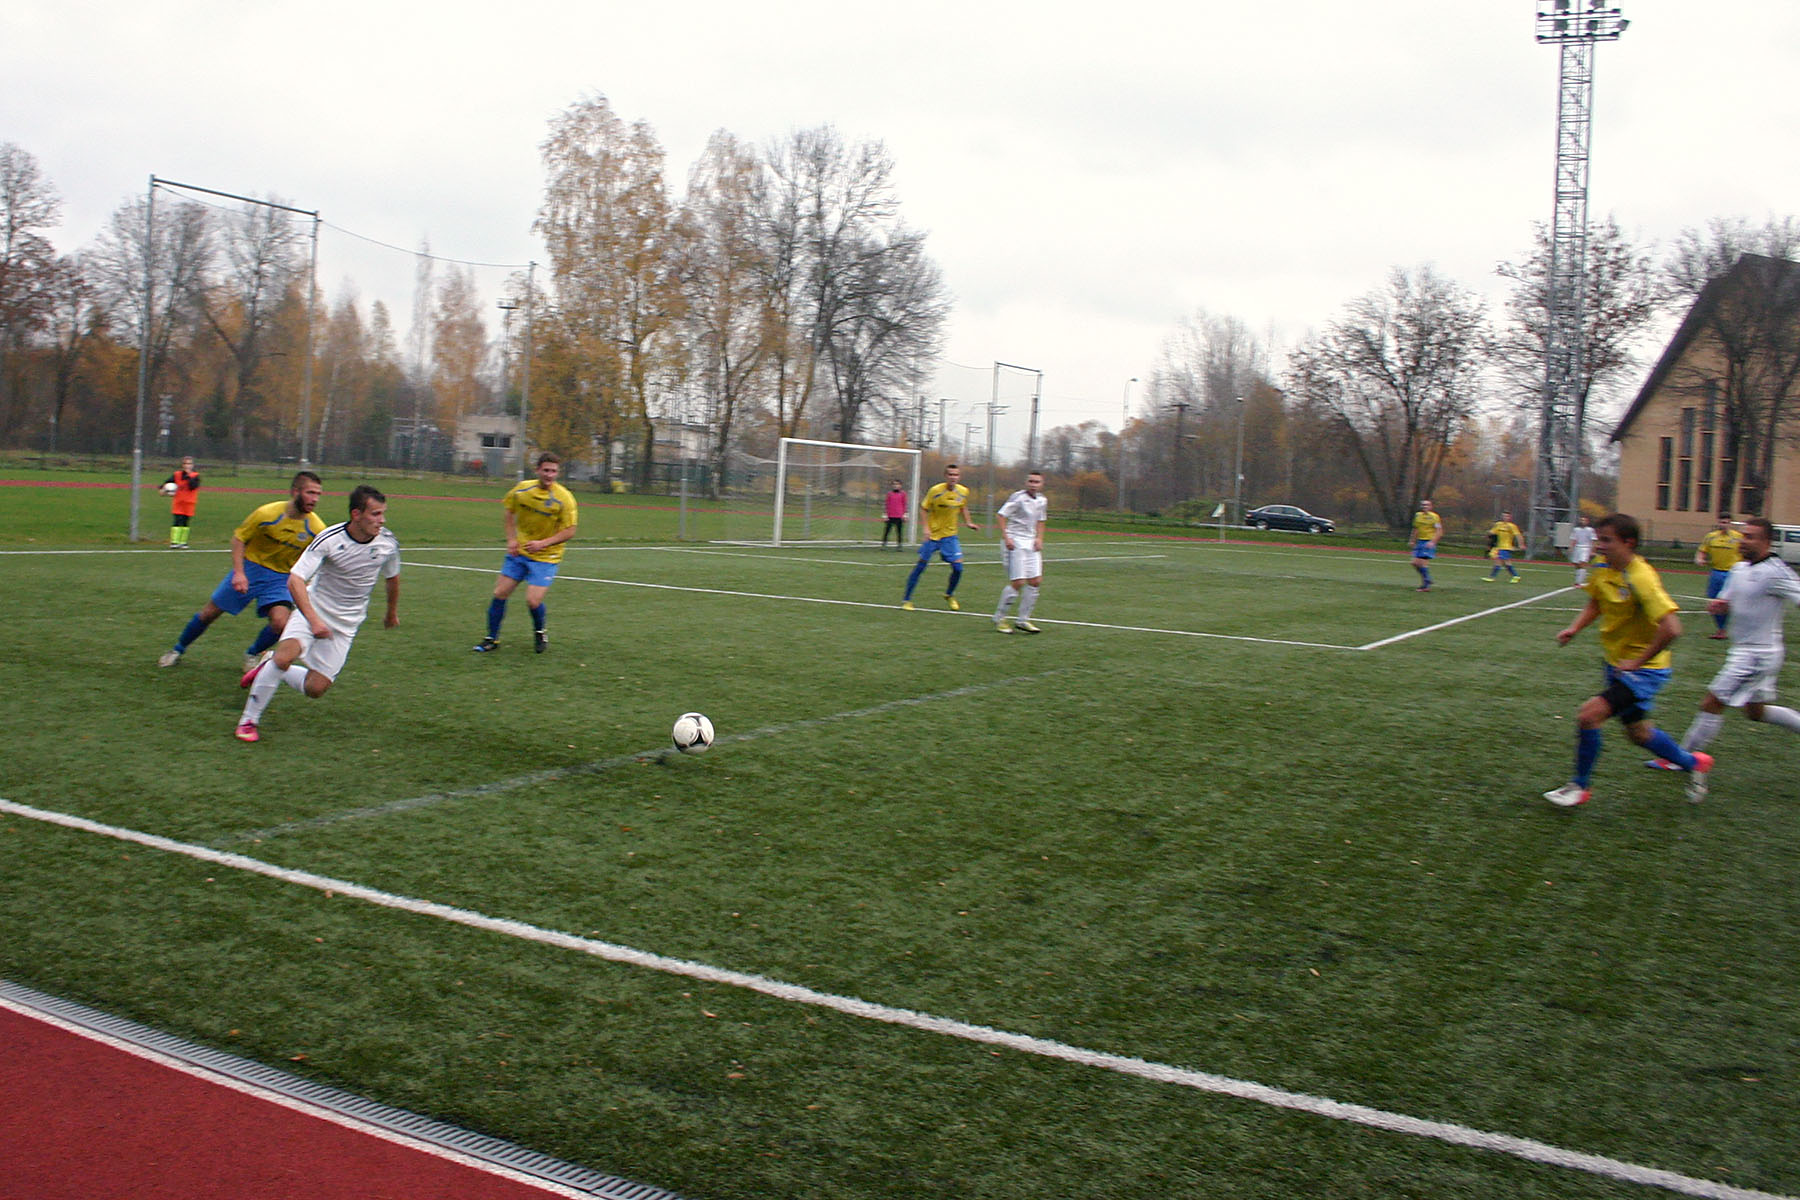 2013-10-27_rtu_futbols_05.jpg